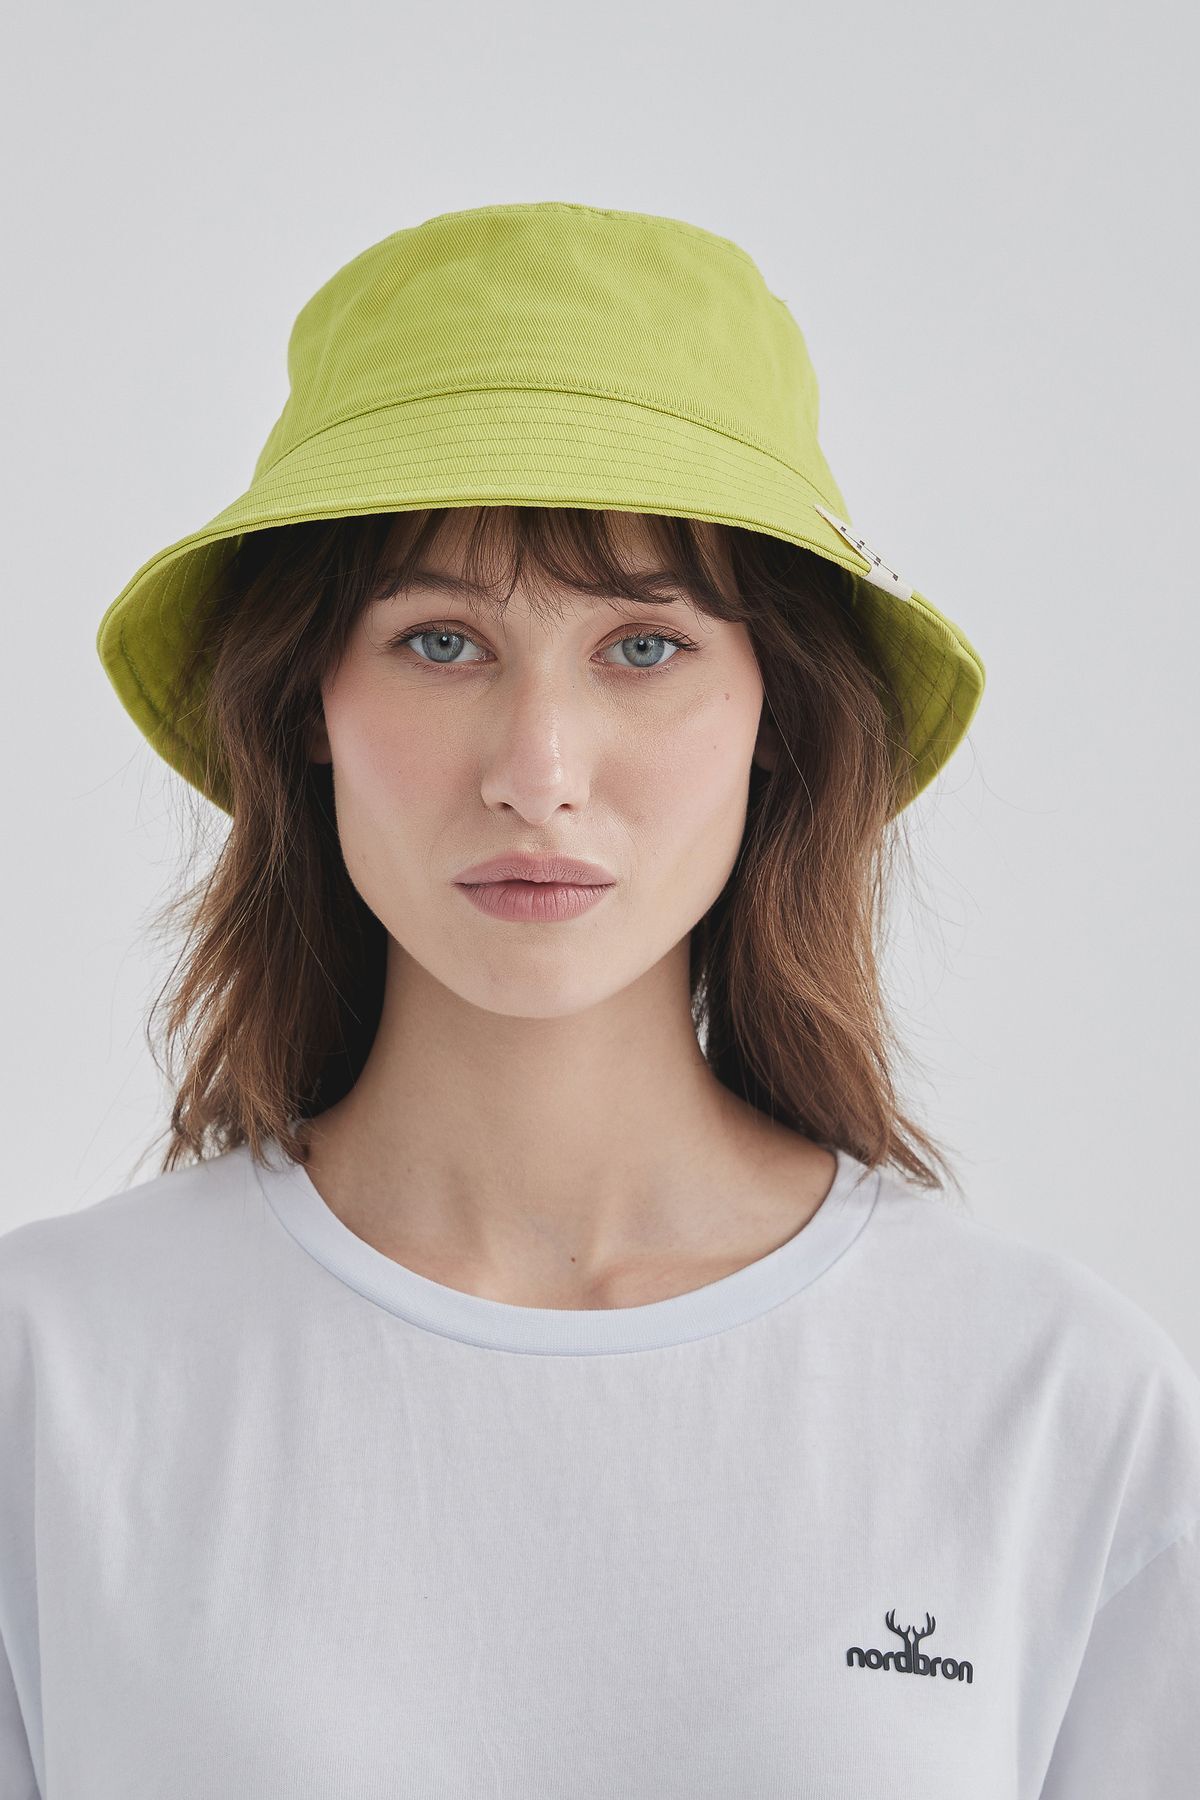 Nordbron Unisex Limon Yeşili Yazlık Terletmez Nakış Detaylı Buxket Kova Şapka %100 Pamuklu Astar Gravois